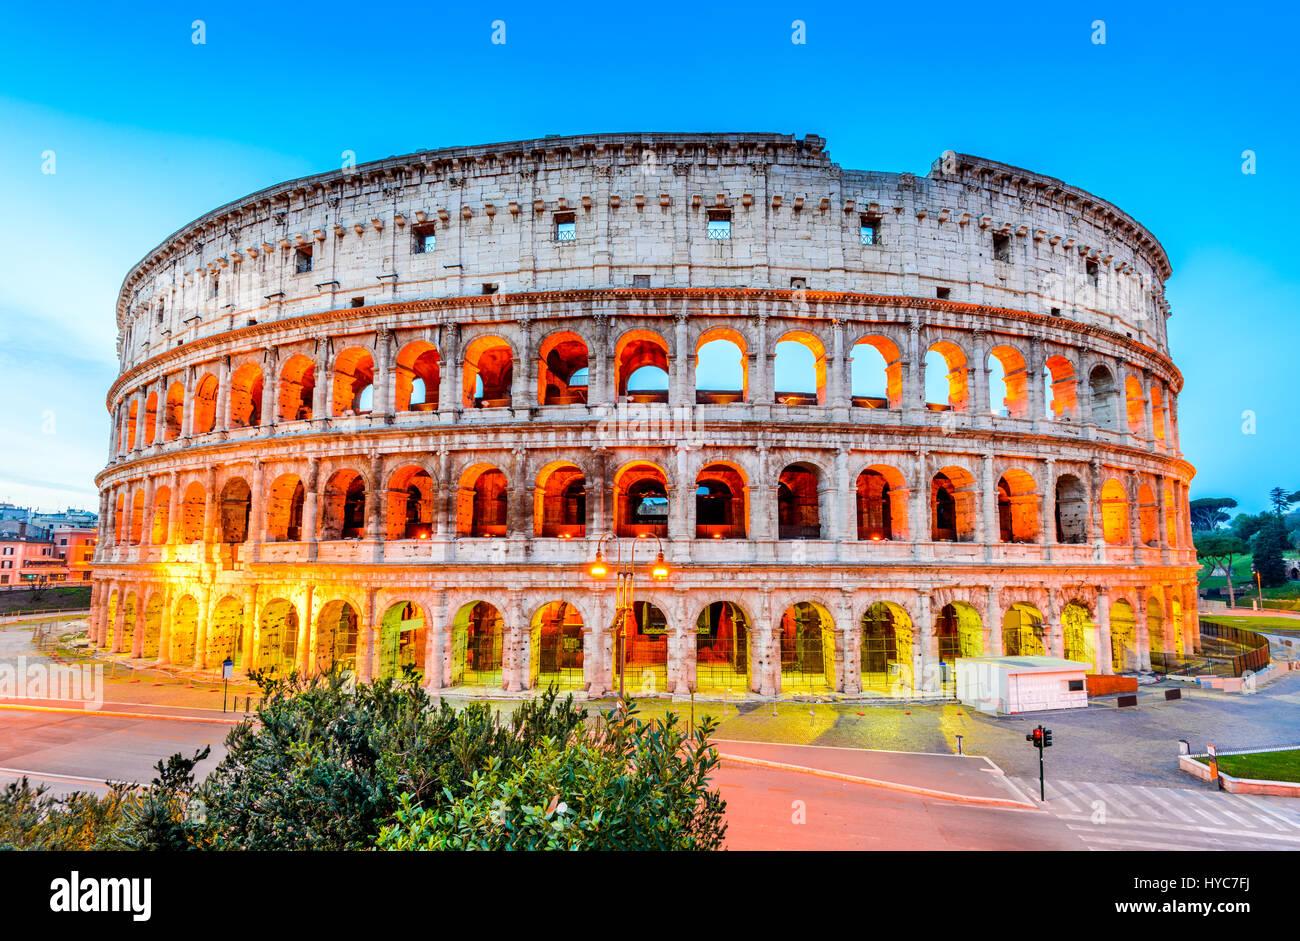 Roma Italia Colosseo Colosseo O Coloseo Anfiteatro Flaviano Piu Grande Mai Costruito Simbolo Dell Antica Roma Citta Nell Impero Romano Foto Stock Alamy